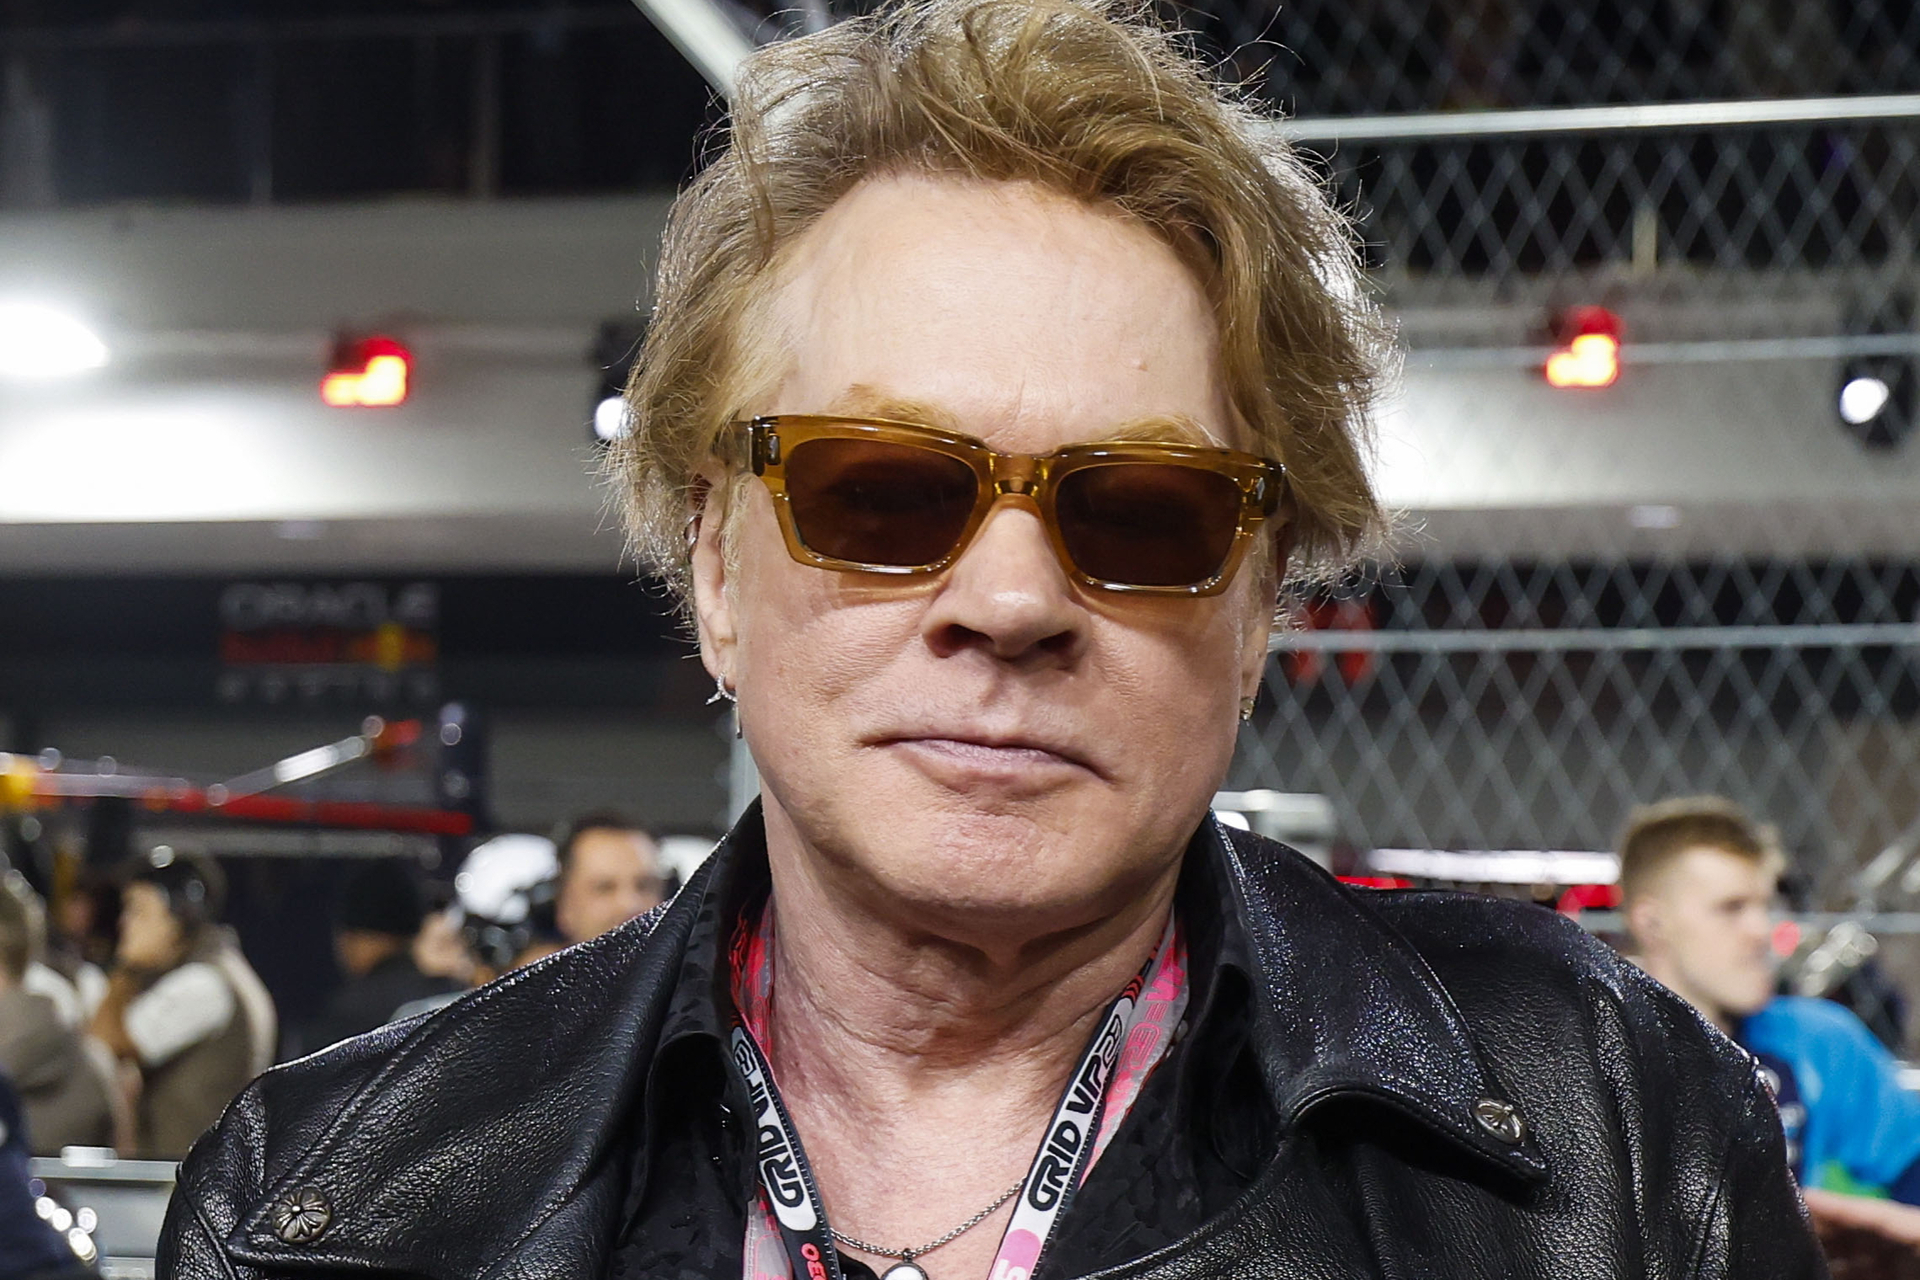 Axl Rose, vocalista de Guns N' Roses, es acusado de violación por la modelo Sheila Kennedy